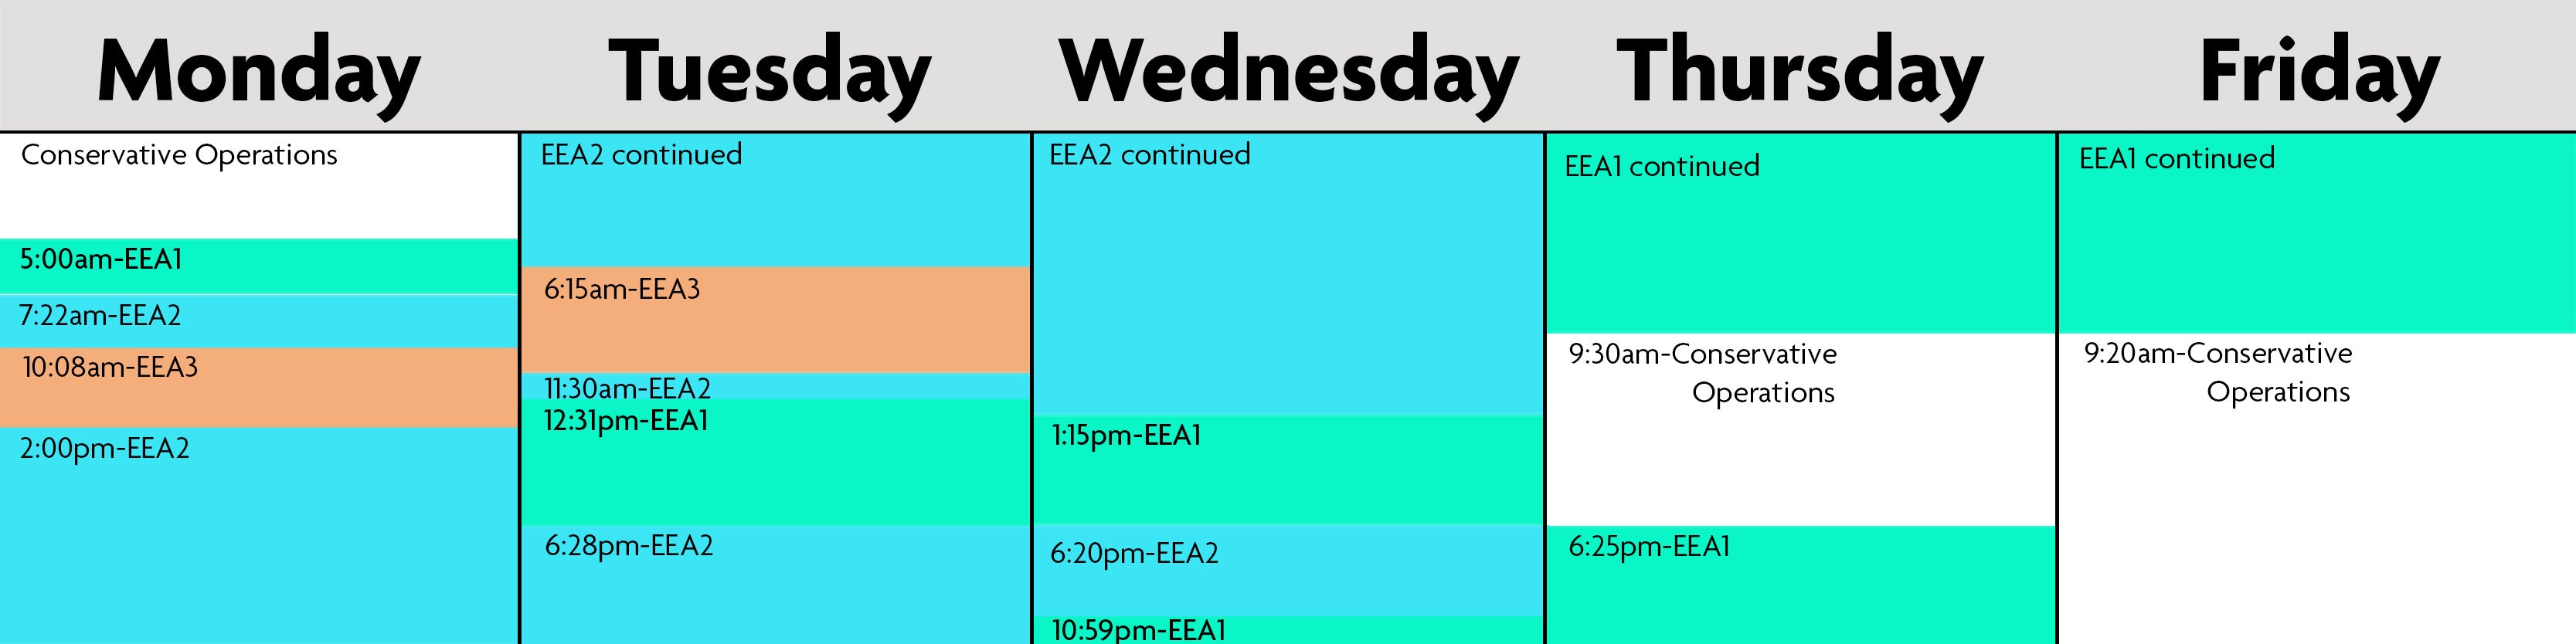 EEA schedule.jpg